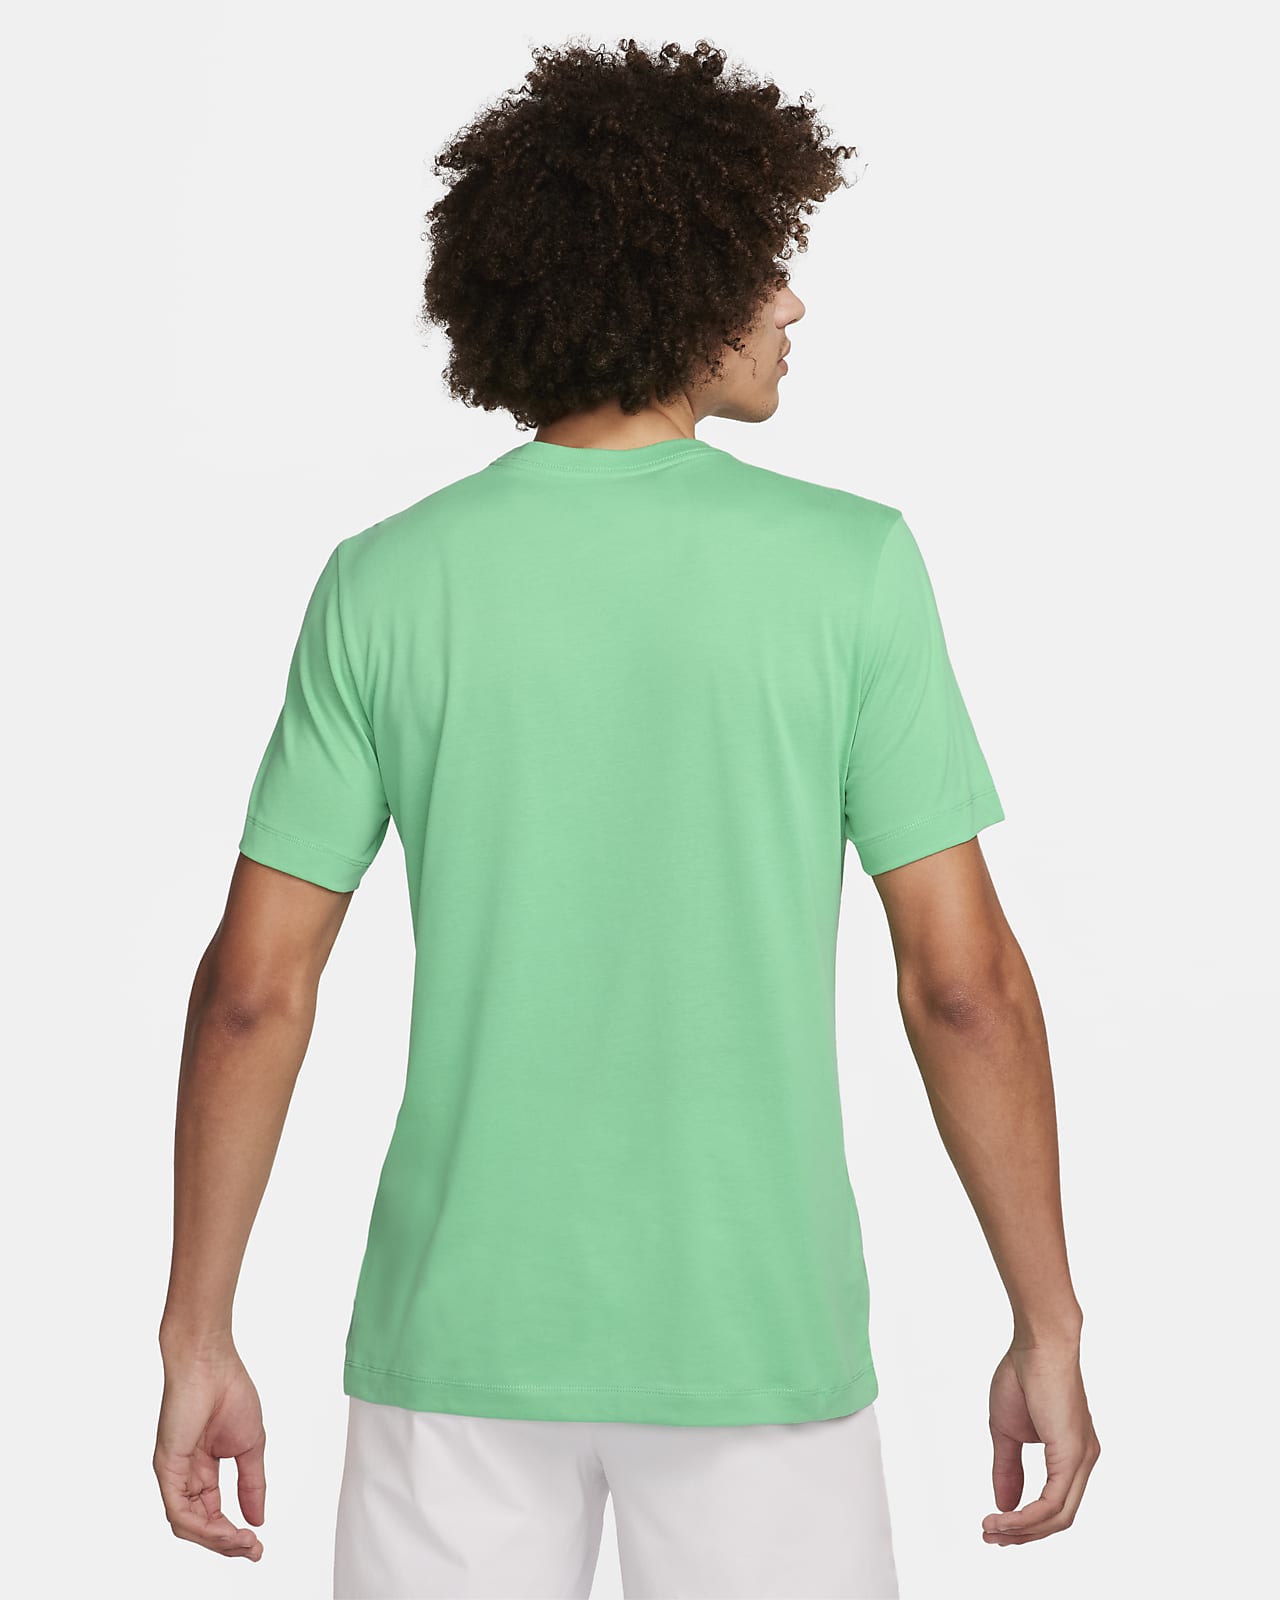 Nike Dri-FIT Rafa Challenger Camiseta Tenis Hombre Pure Platinum